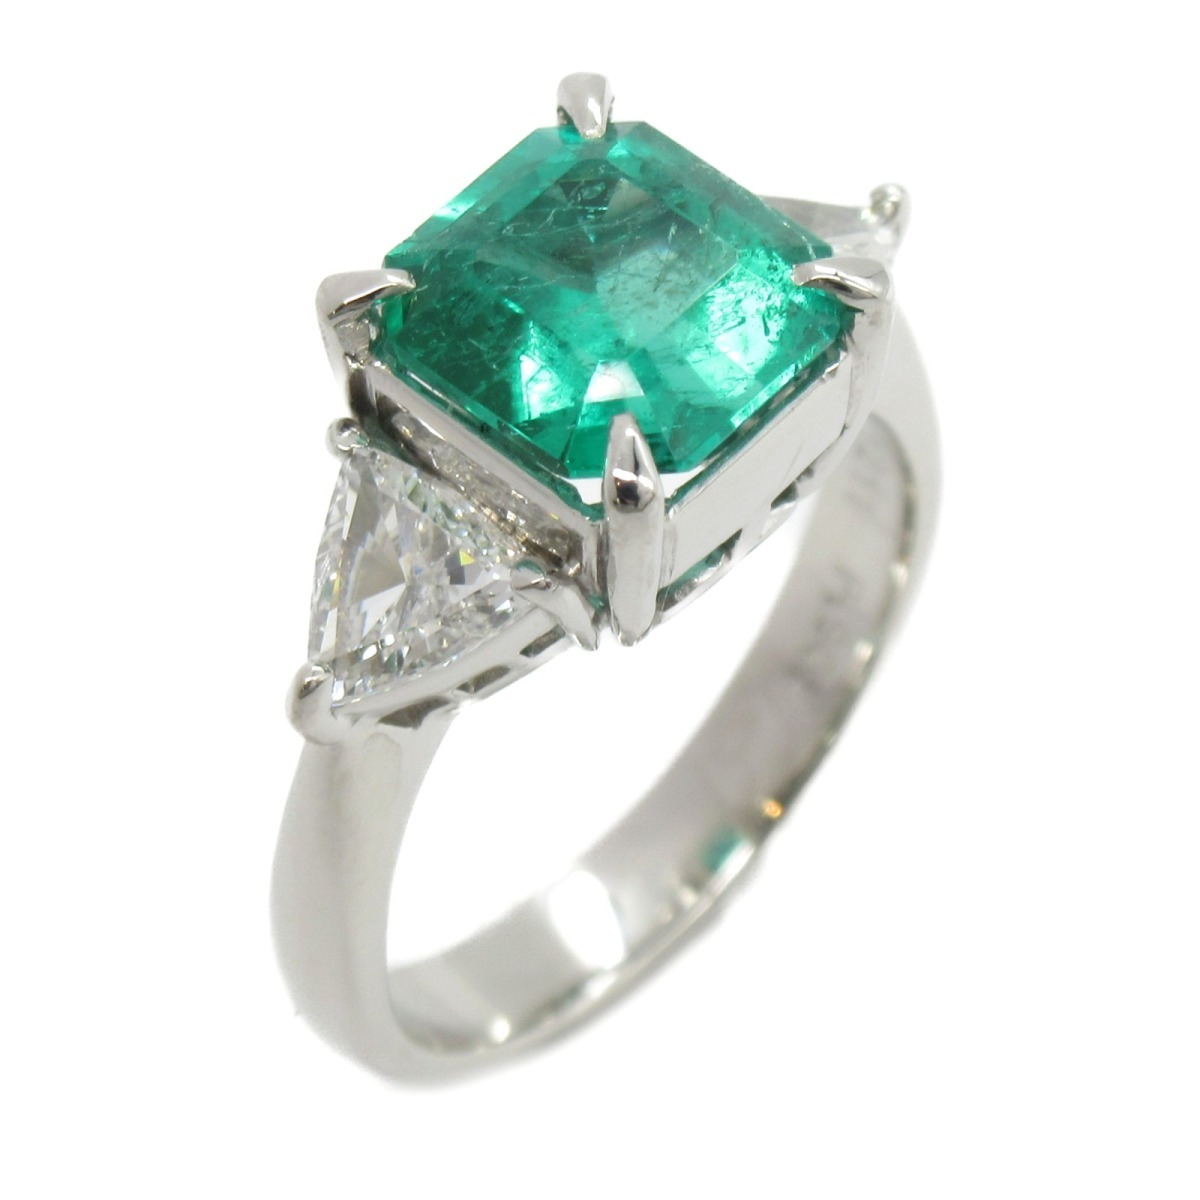 JEWELRY JEWELRY リング・指輪 エメラルド ダイヤモンド リング グリーン系 Pt900プラチナ 中古 エメラルド